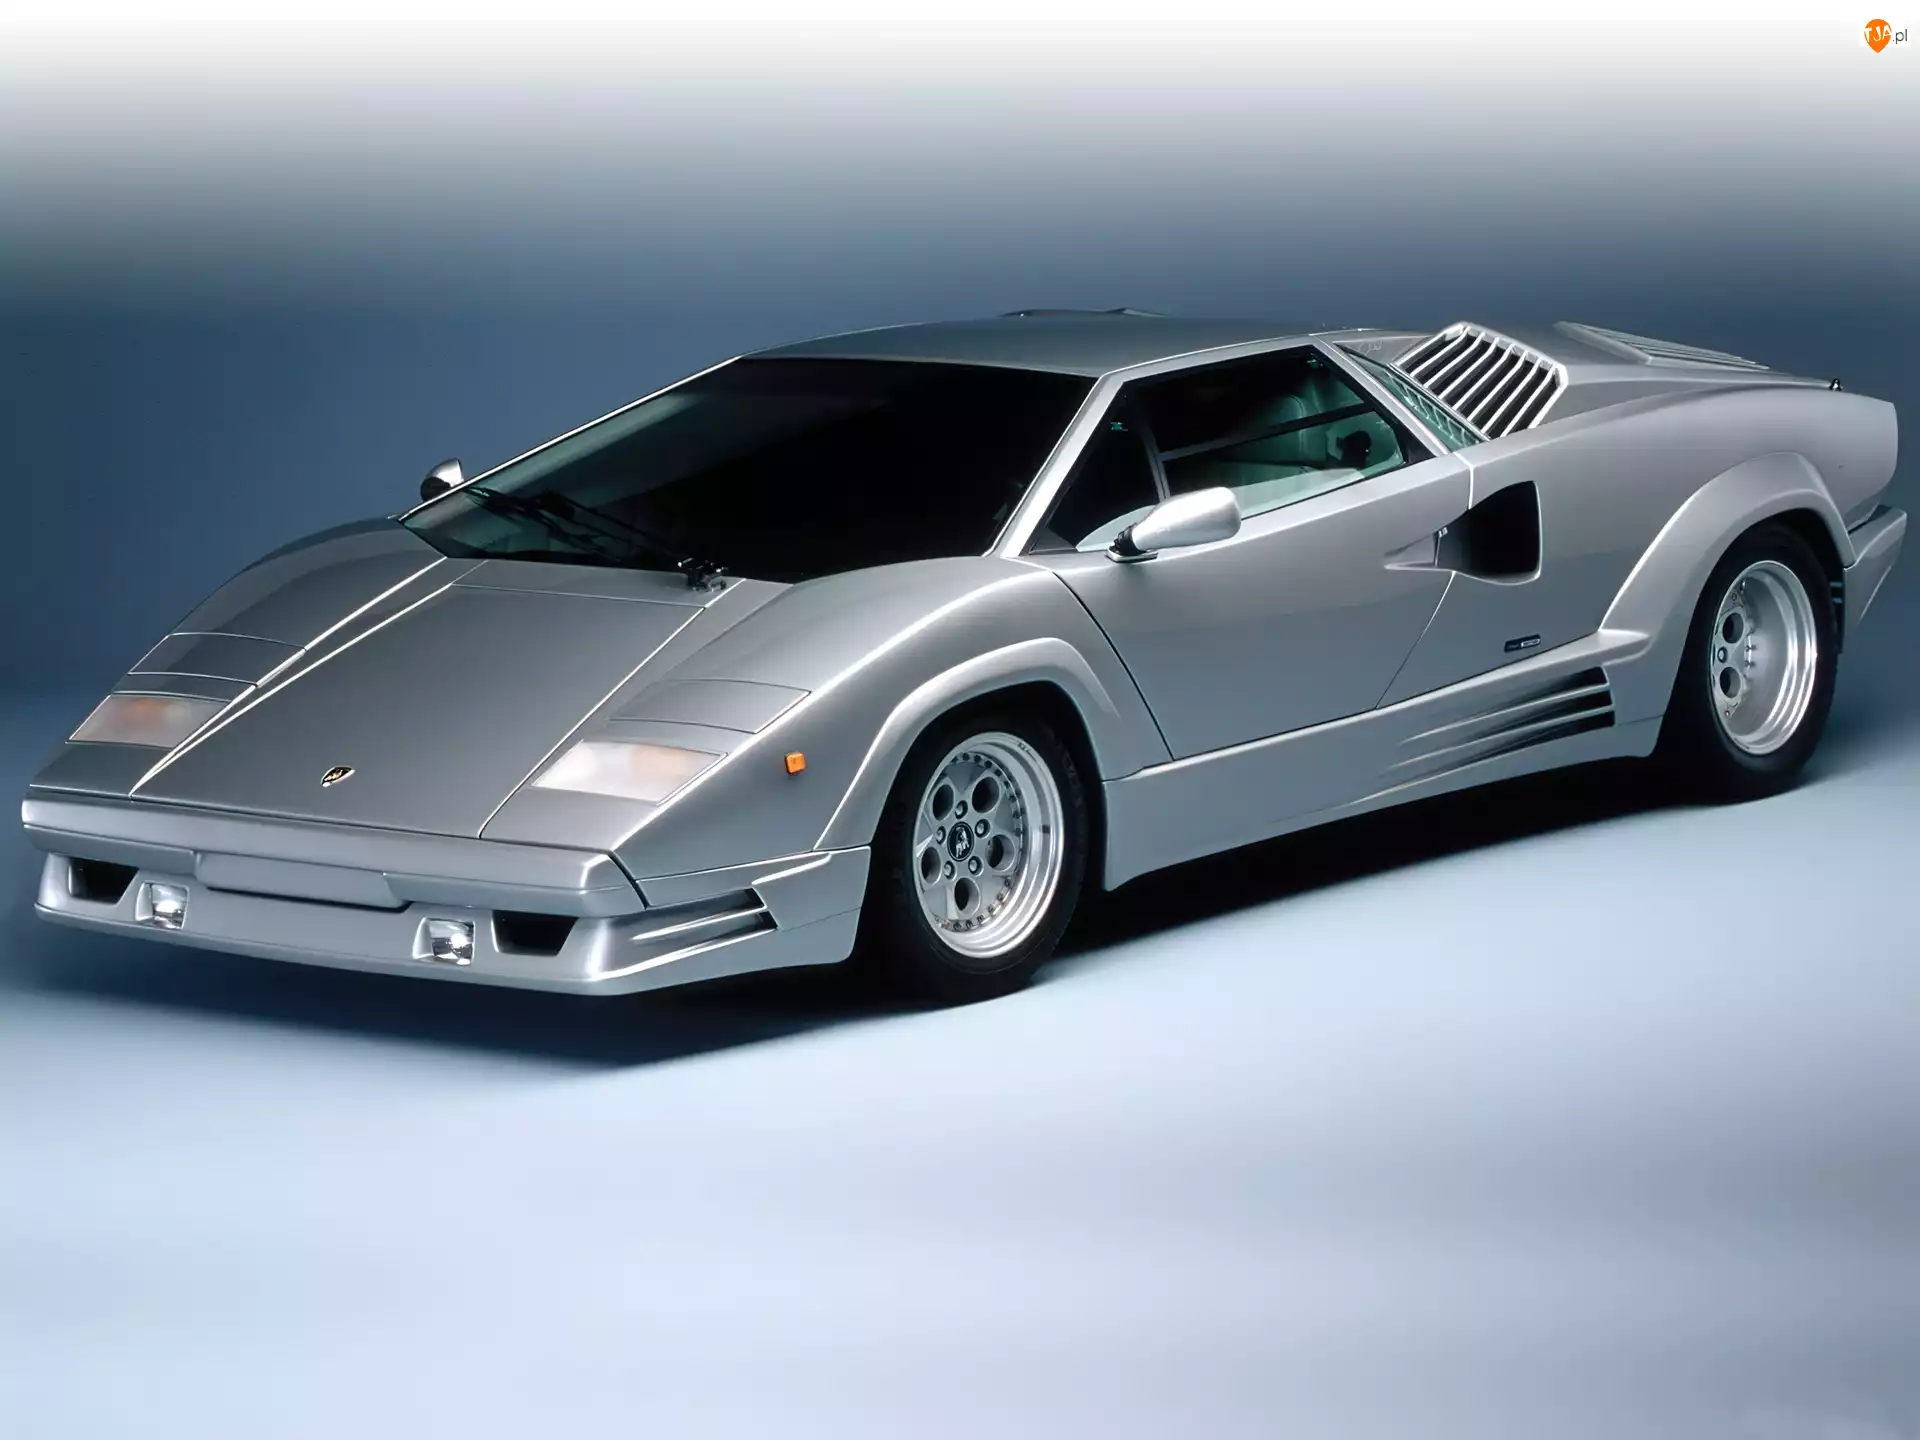 Anniversary, Lamborghini Countach, 25th